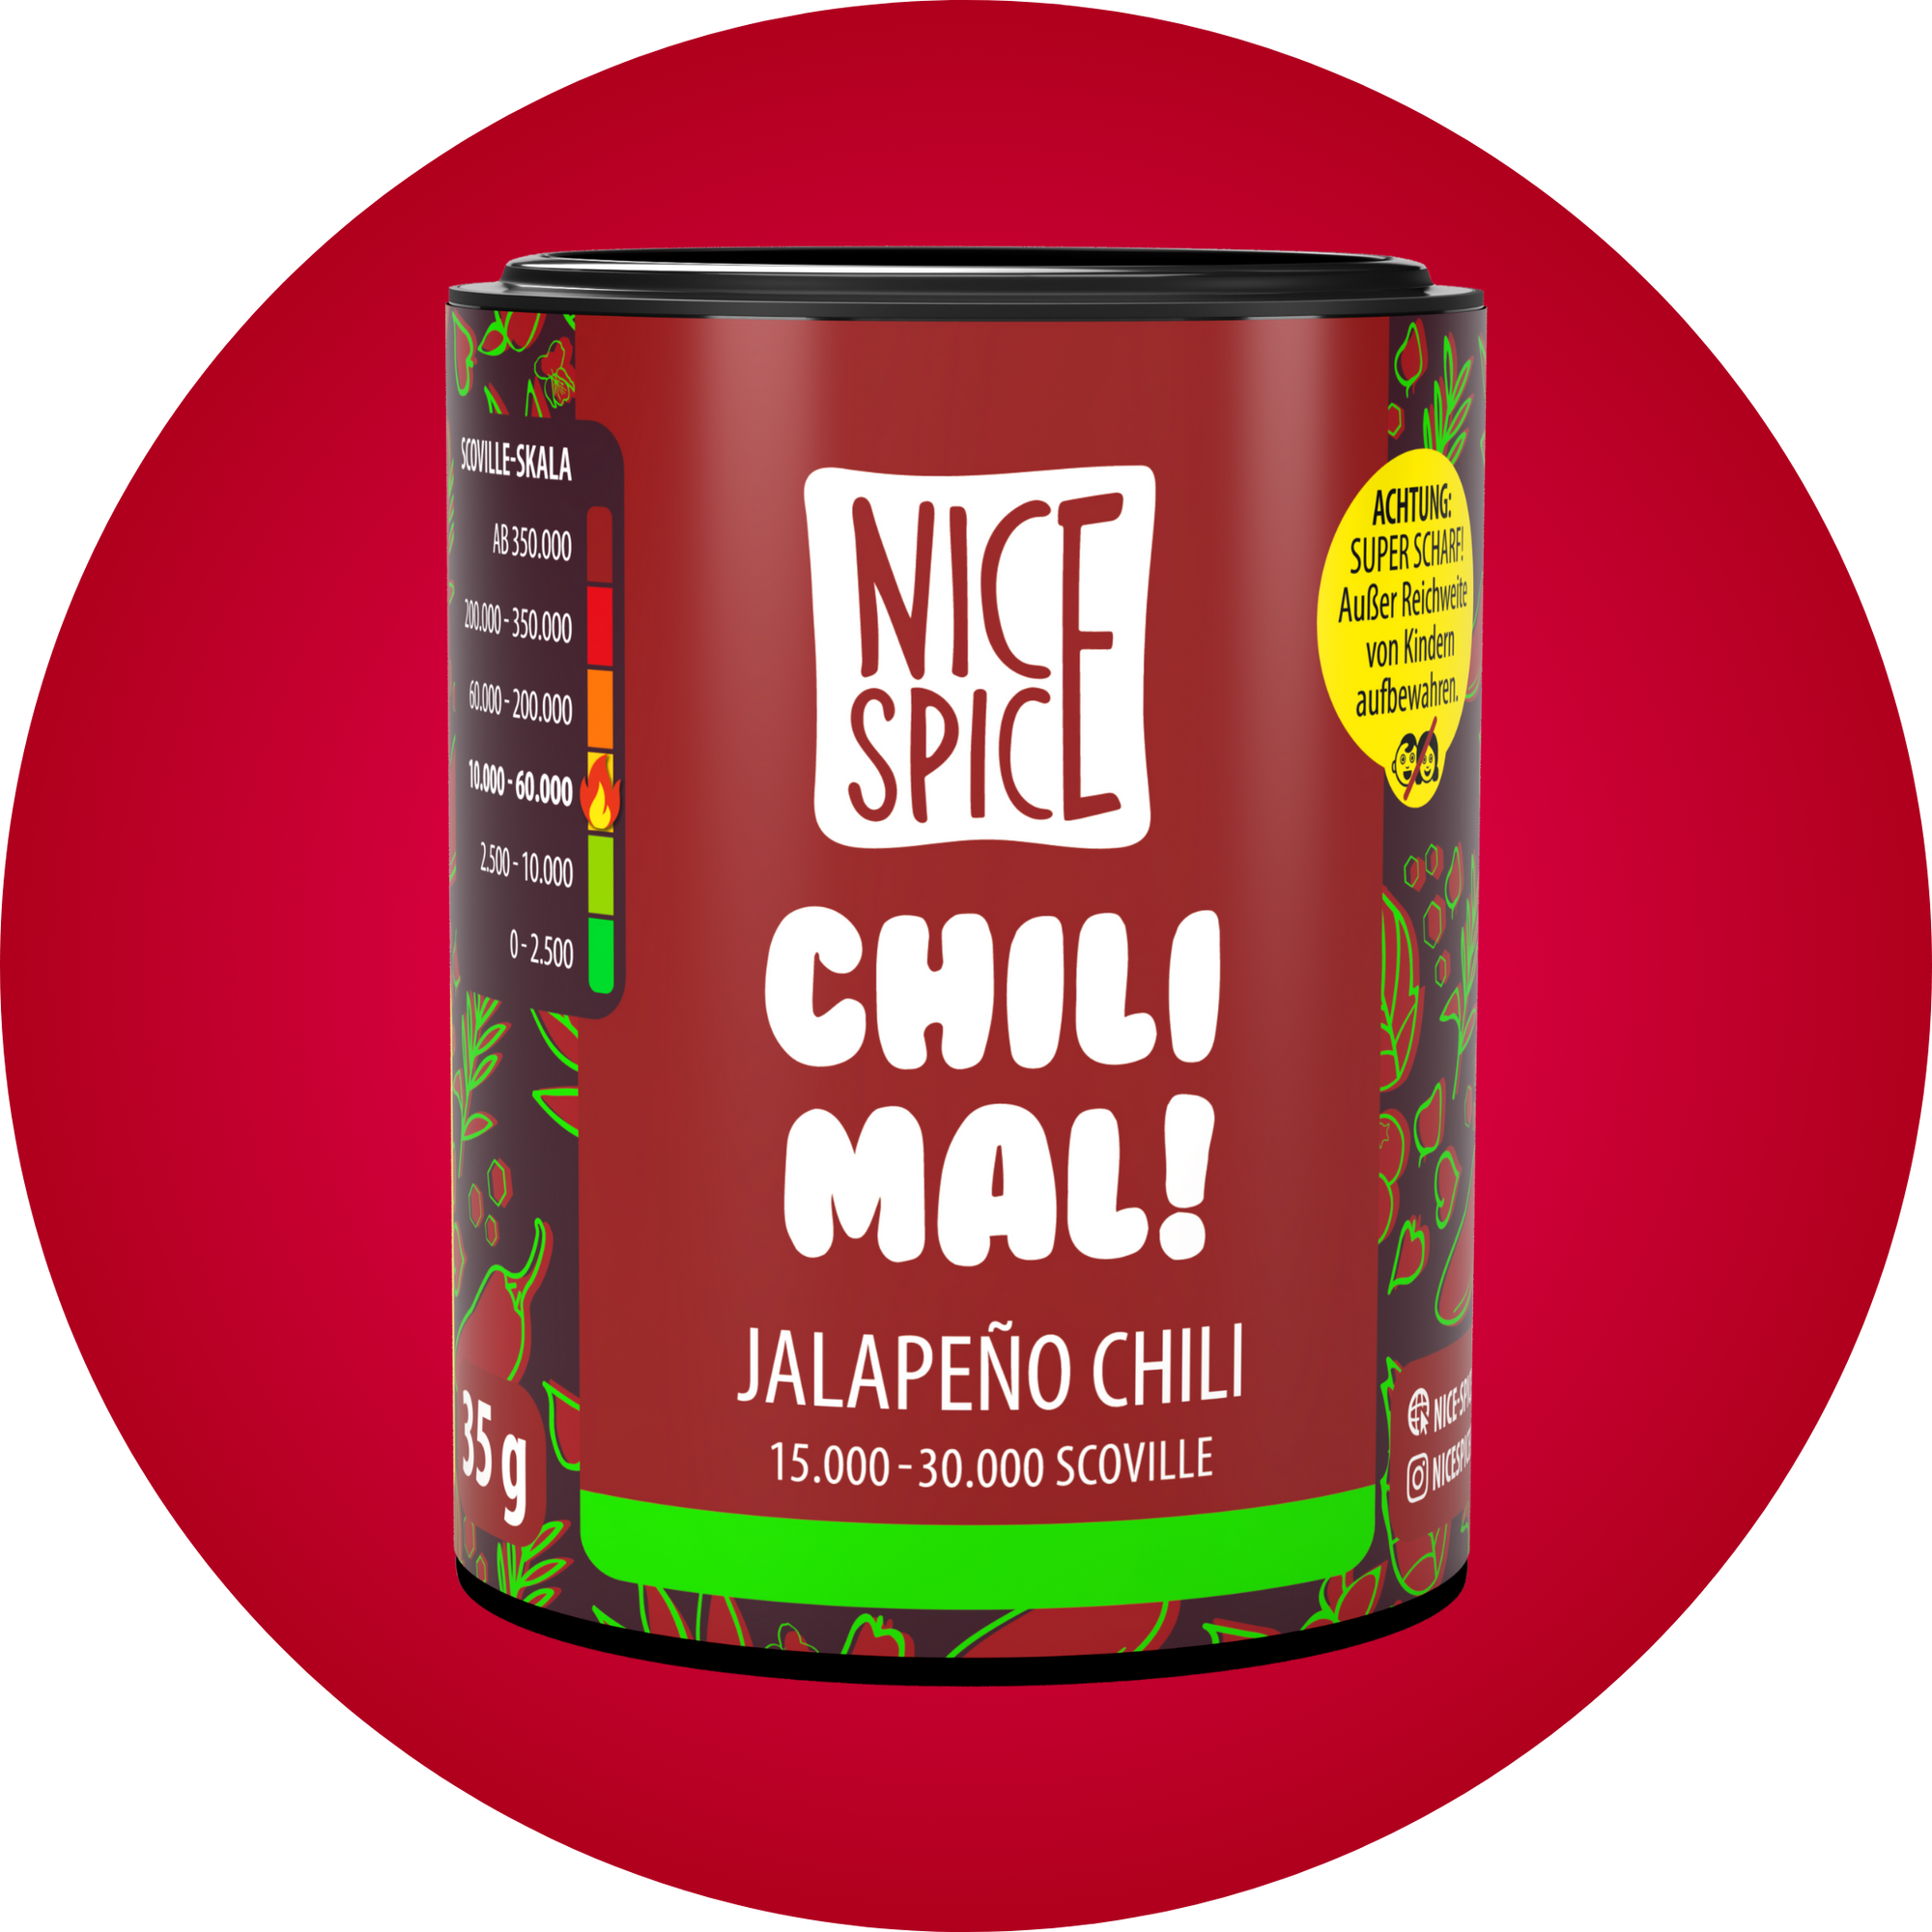 NICE SPICE Chili Mal Jalapeno Chili Flocken in dunkelroter zylinderförmiger Dose vor rotem Hintergrund